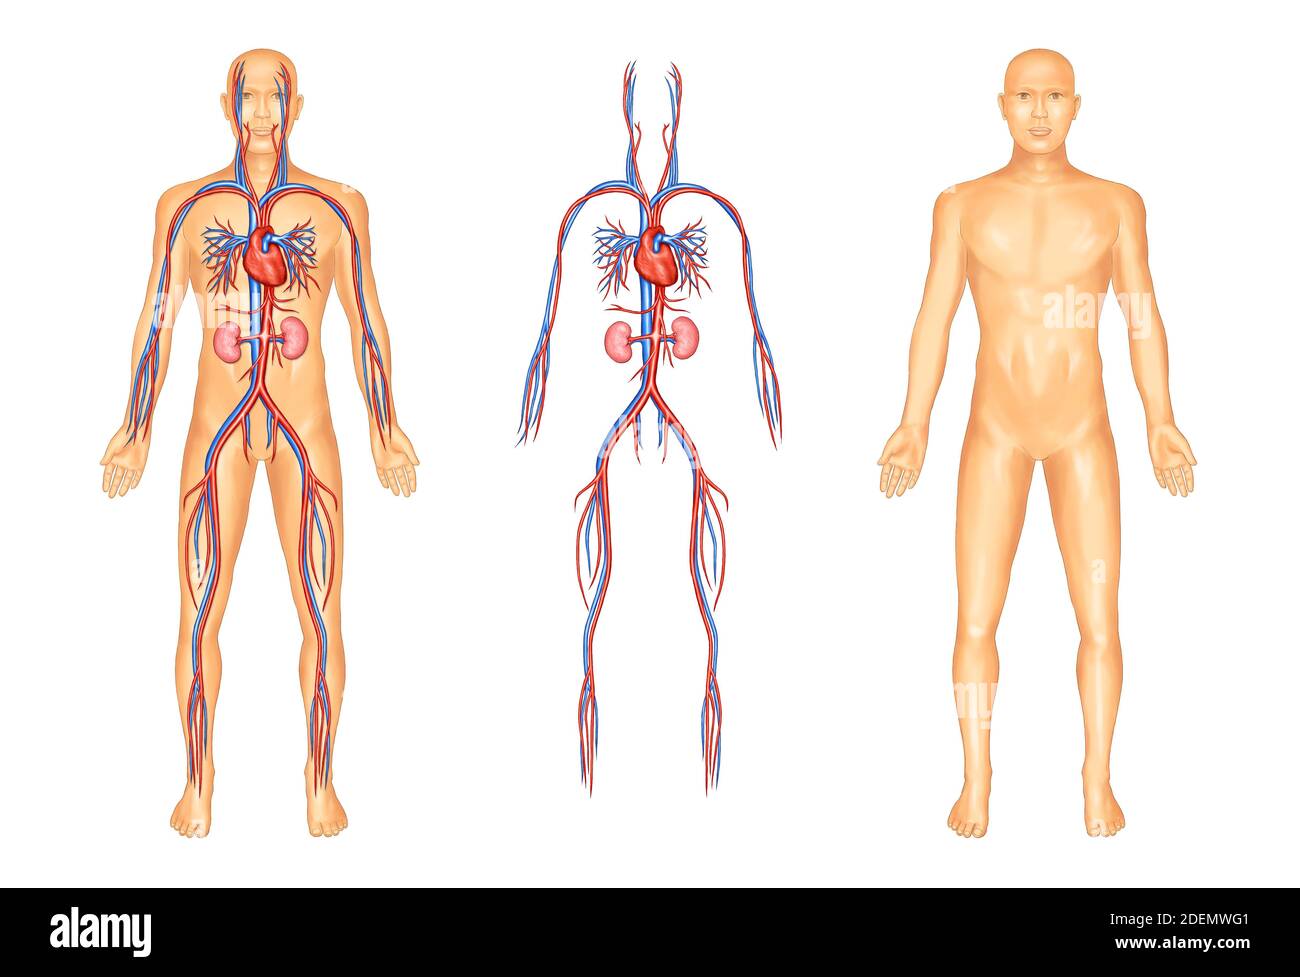 illustration anatomique du système vasculaire humain Banque D'Images